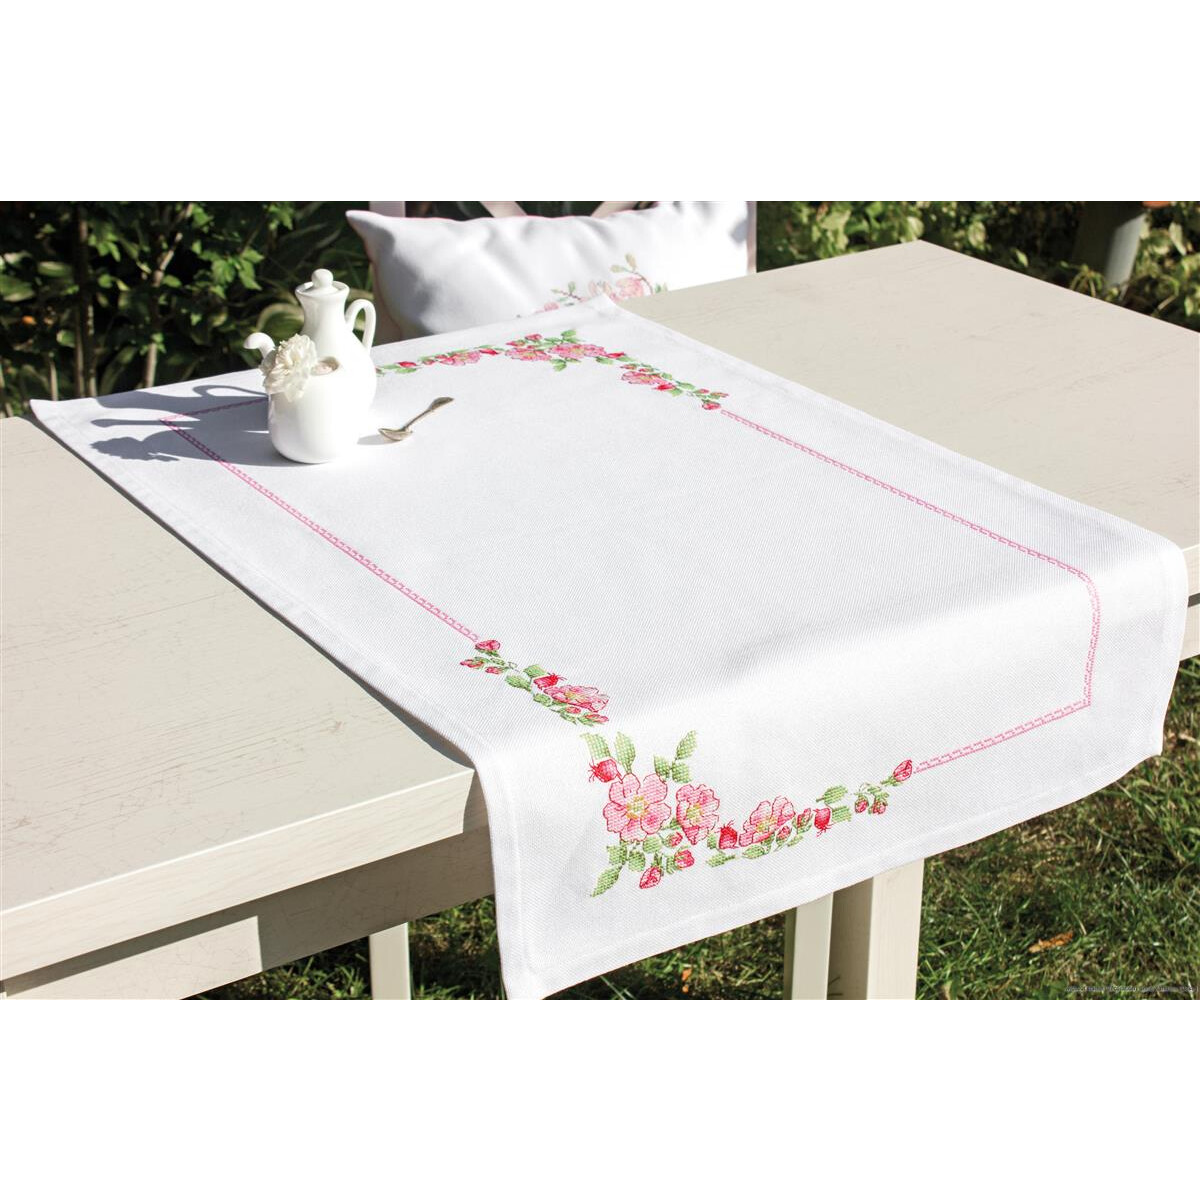 Белый стол на лужайке украшен белой скатертью с вышивкой...